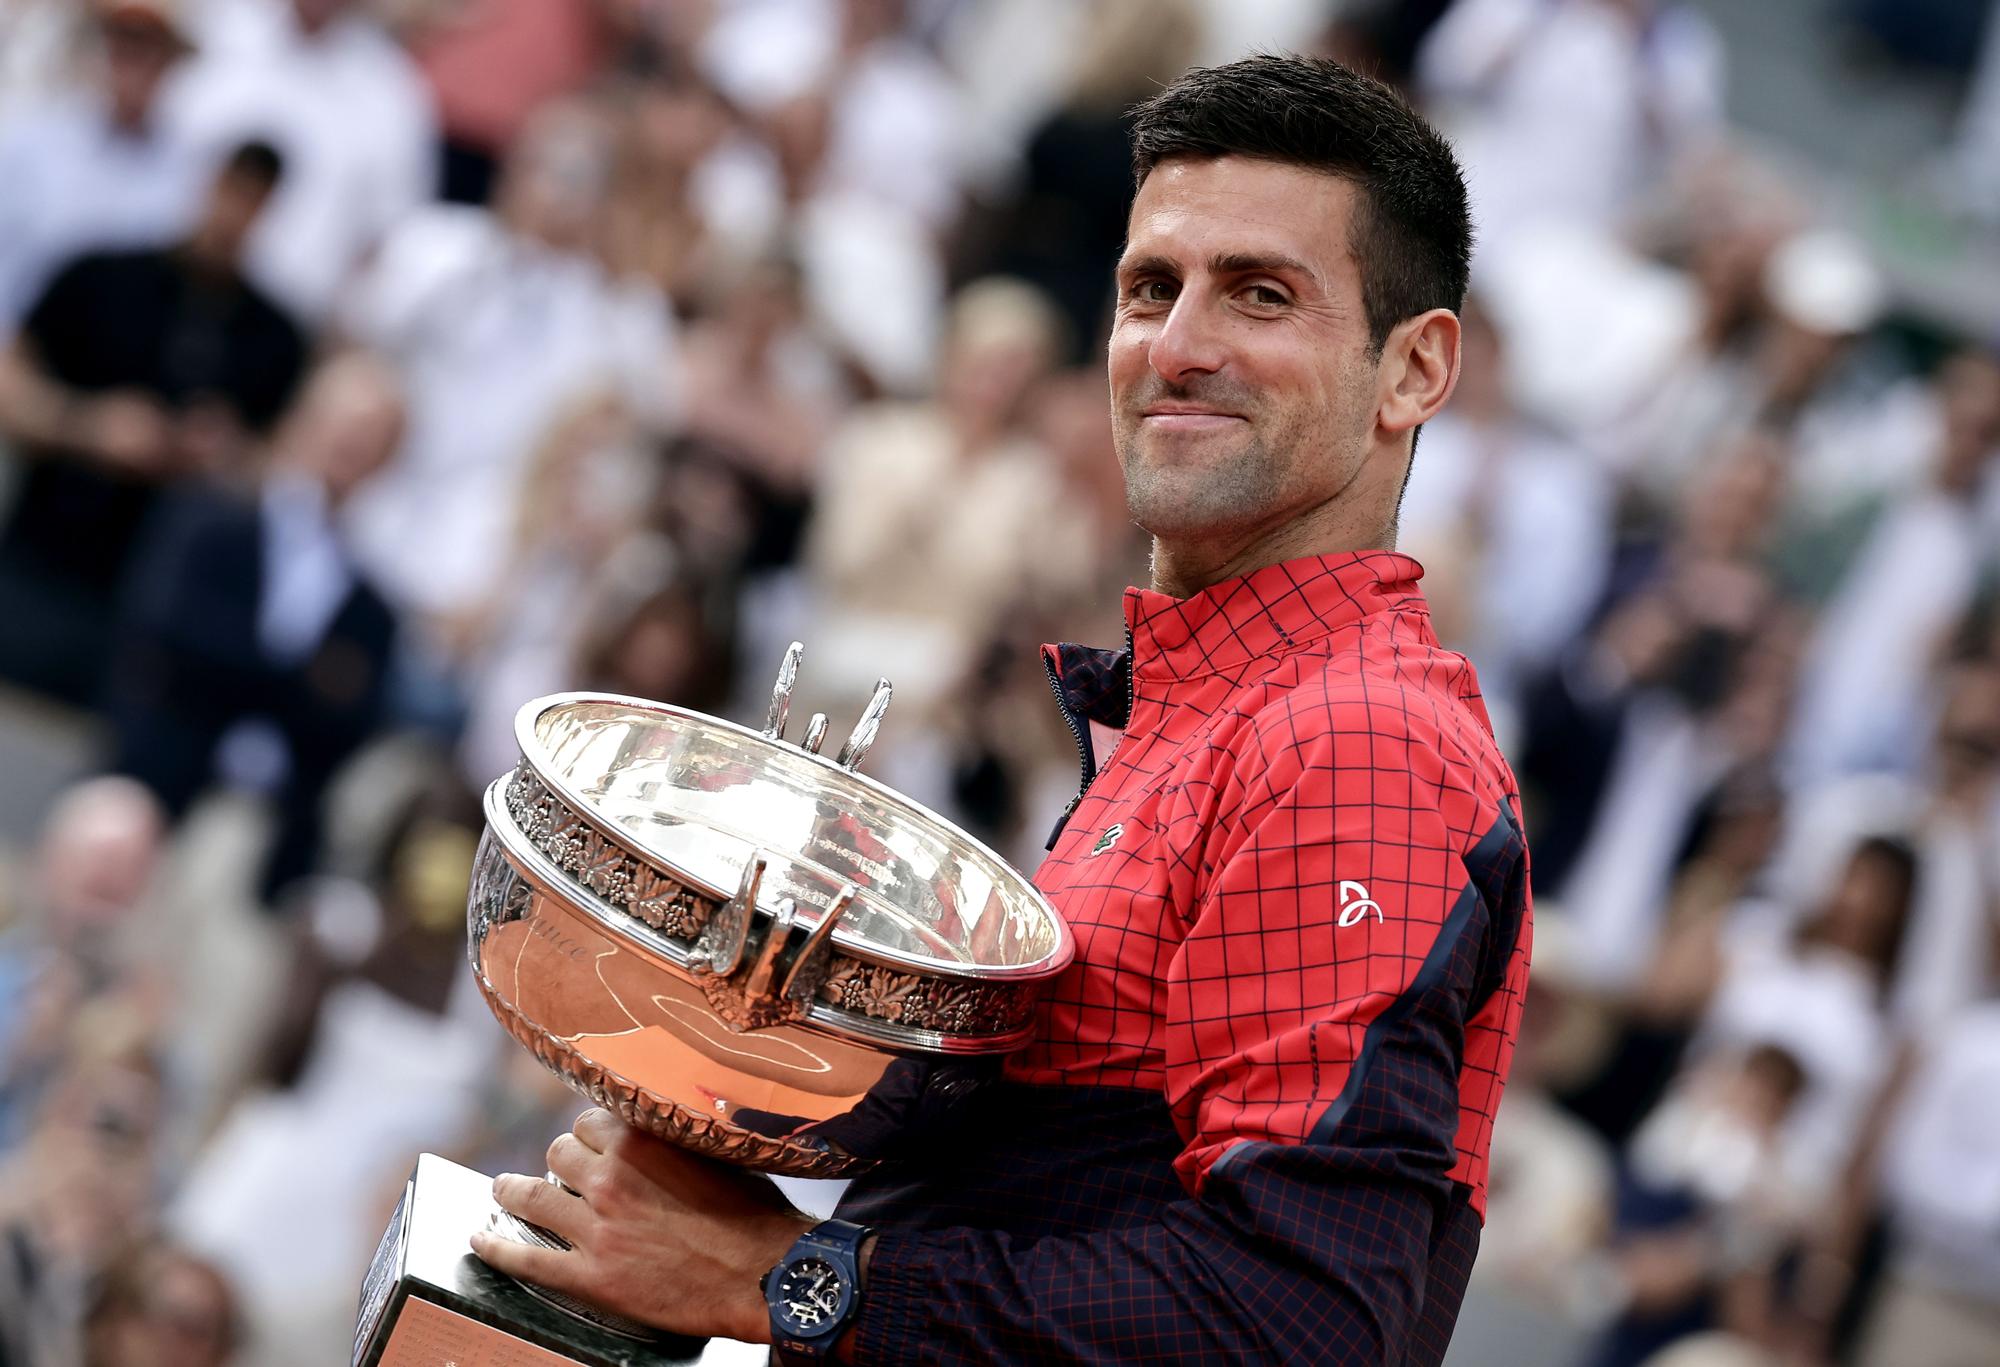 Final de Roland Garros: Novak Djokovic - Casper Ruud